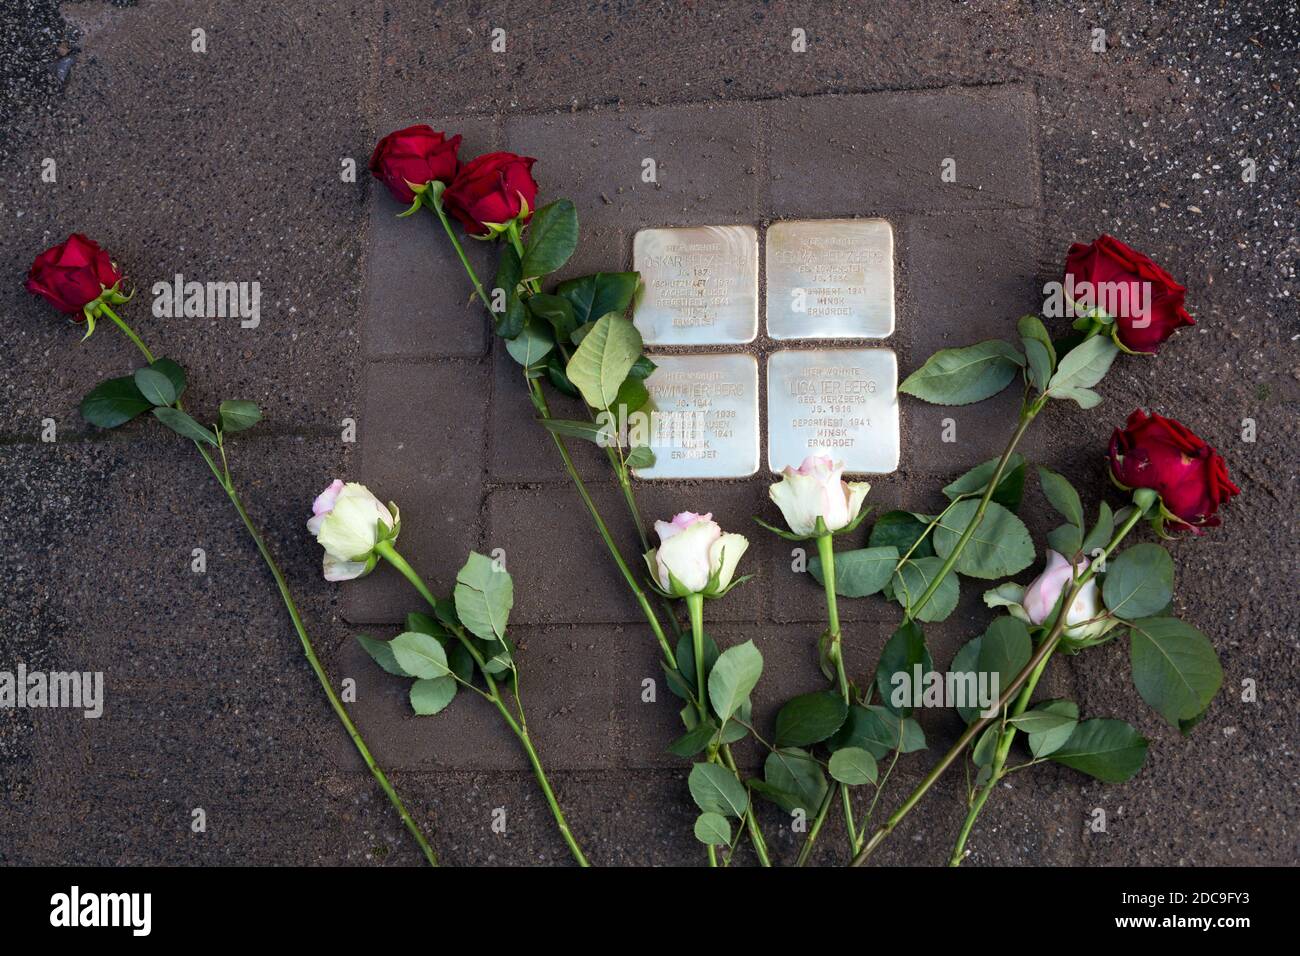 13.10.2020, Brema, Brema, Germania - nuovo blocco di inciampo per i deportati ebrei dell'era nazista. In tutta la Germania, Stones inciampanti danno i nomi Foto Stock